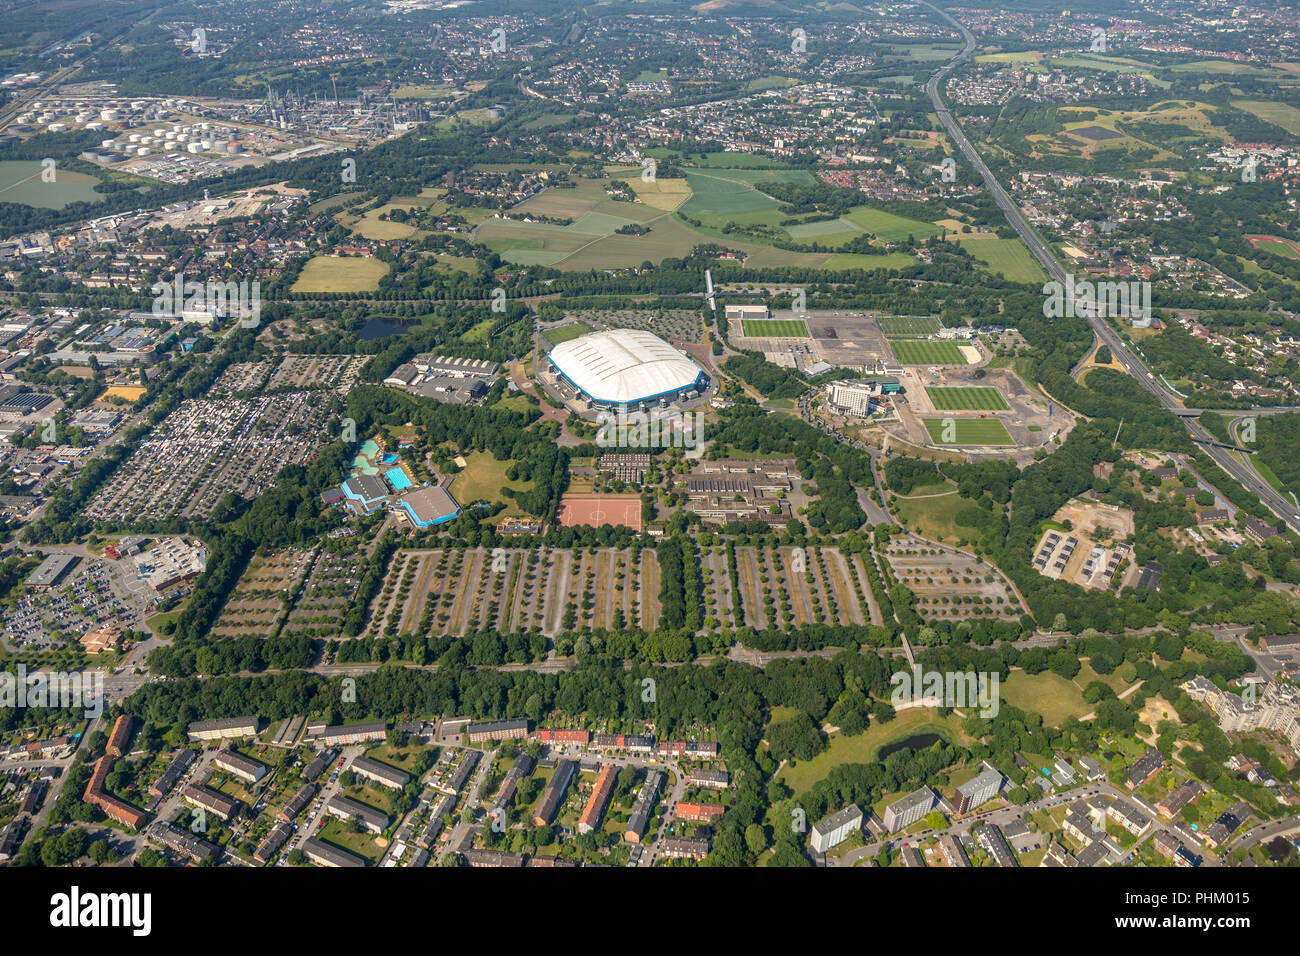 Vista aérea del parque ARENA, Gelsenkirchen, Veltins-Arena, Arena AufSchalke en Gelsenkirchen es el estadio de fútbol del club de fútbol alemán FC Schalke 04, Foto de stock